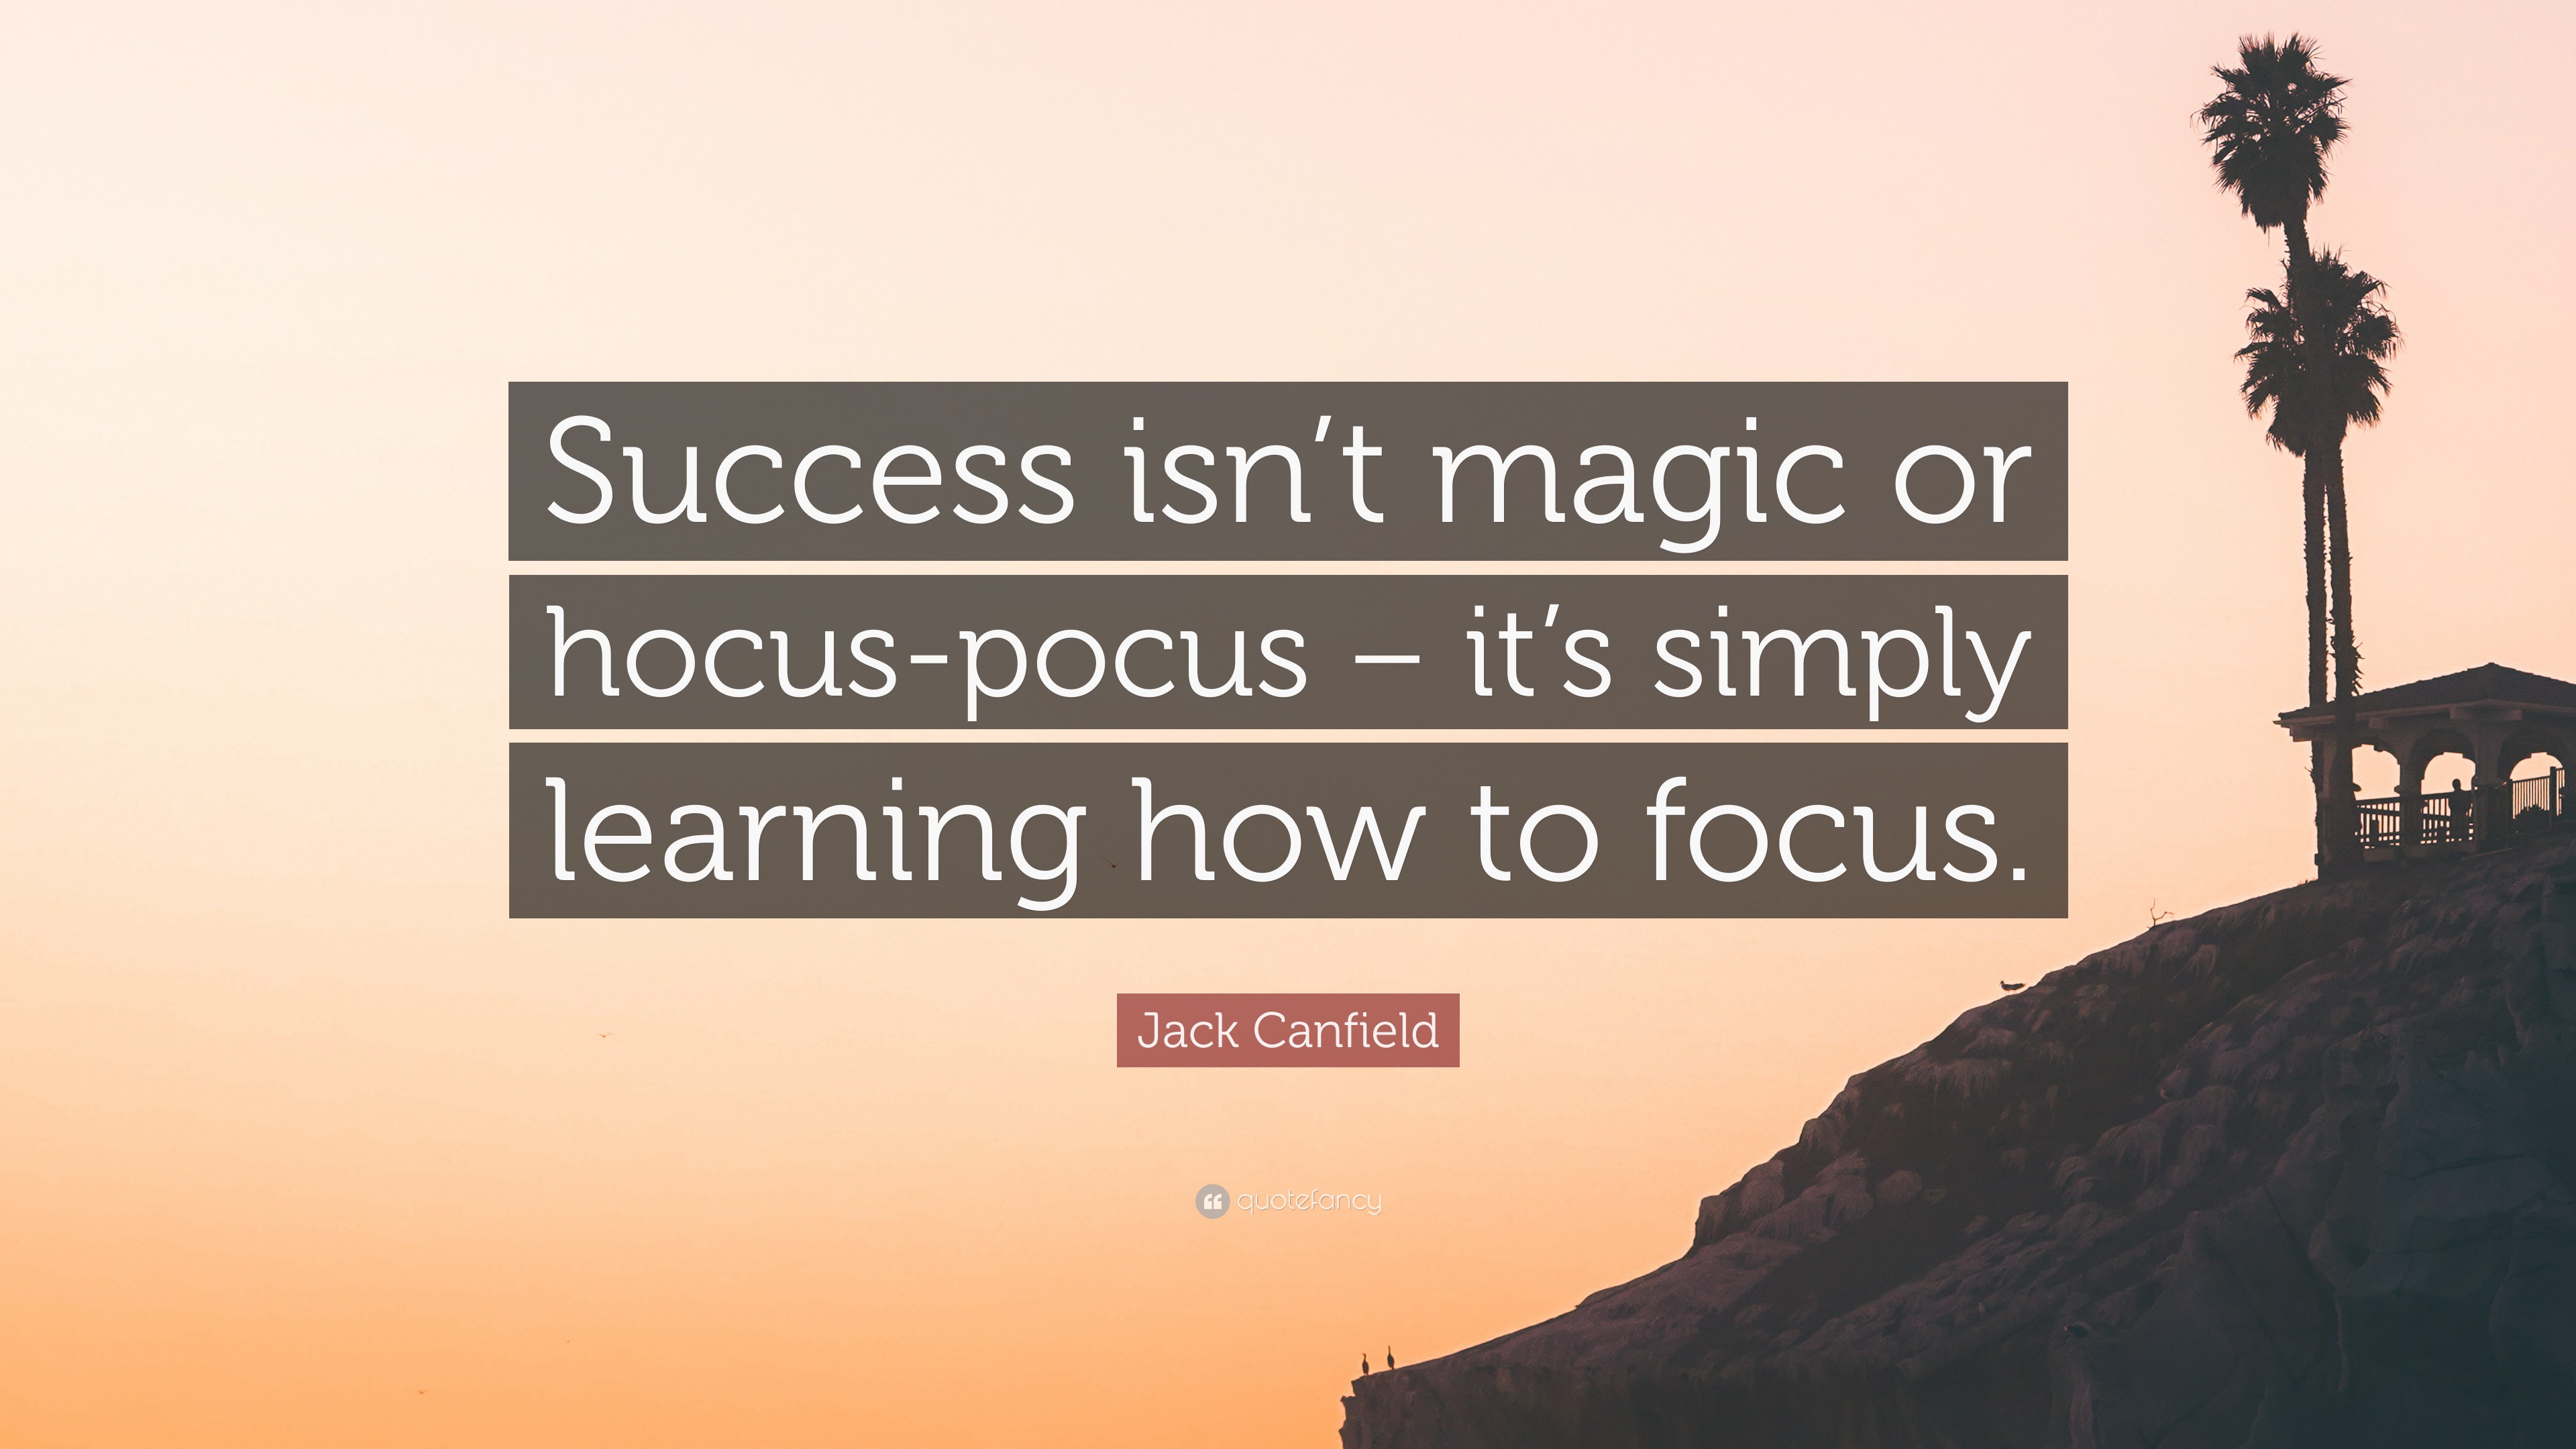 Jack Canfield Quote: “Success isn't magic or hocus-pocus – it's